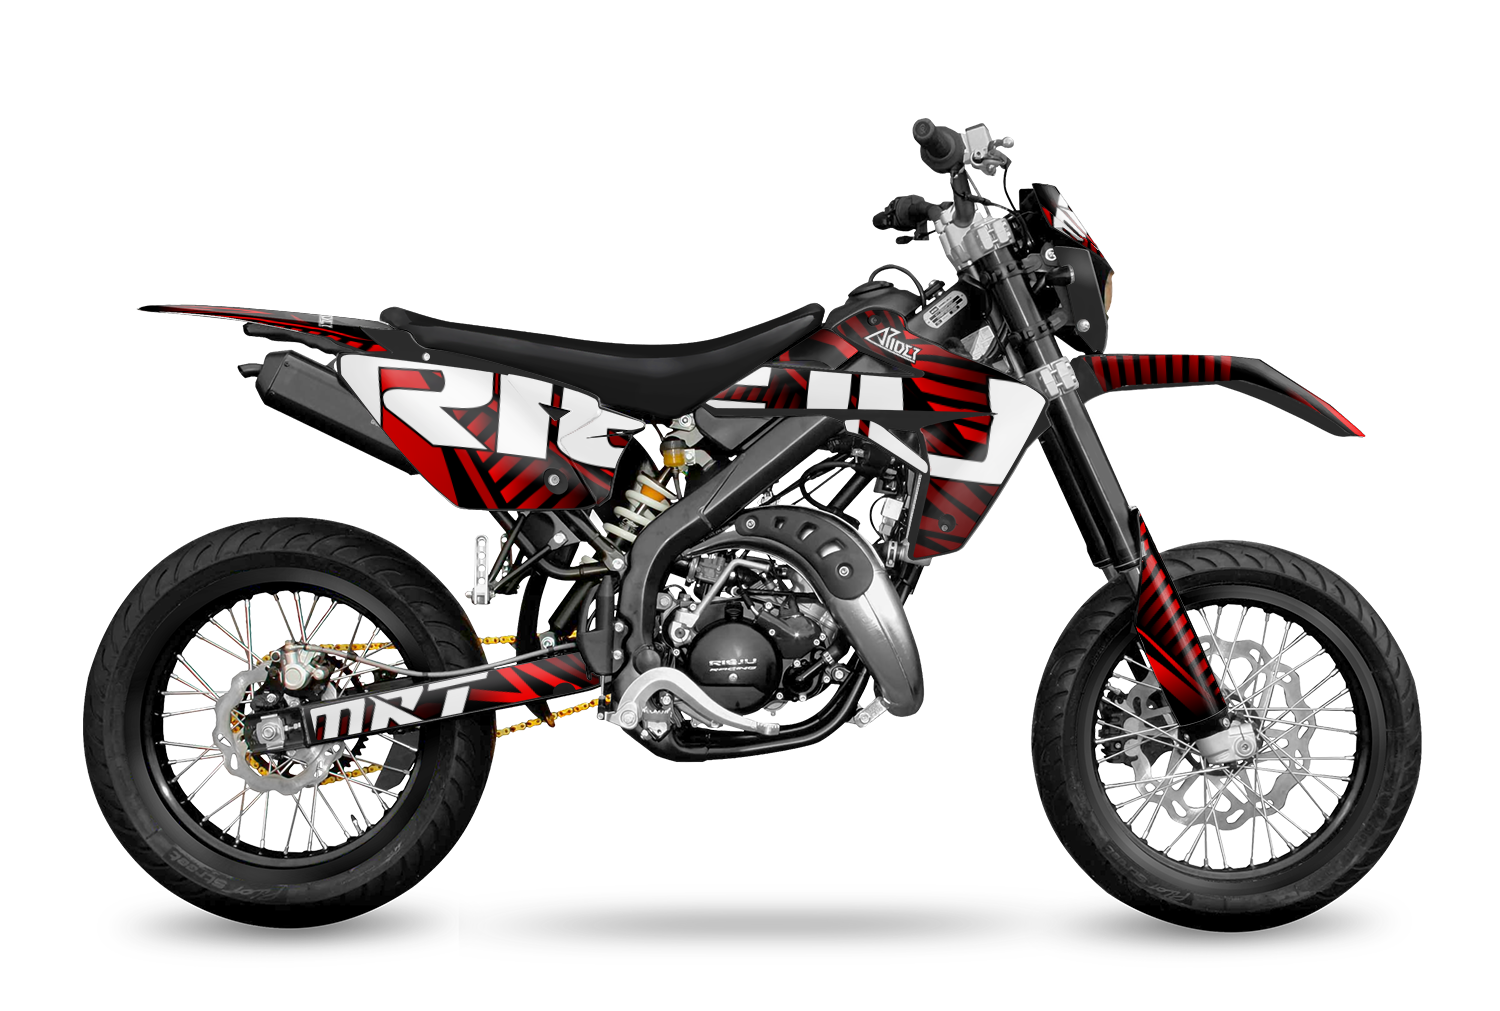 Kits déco 50cc haute qualité pour moto - Personnalisation illimitée